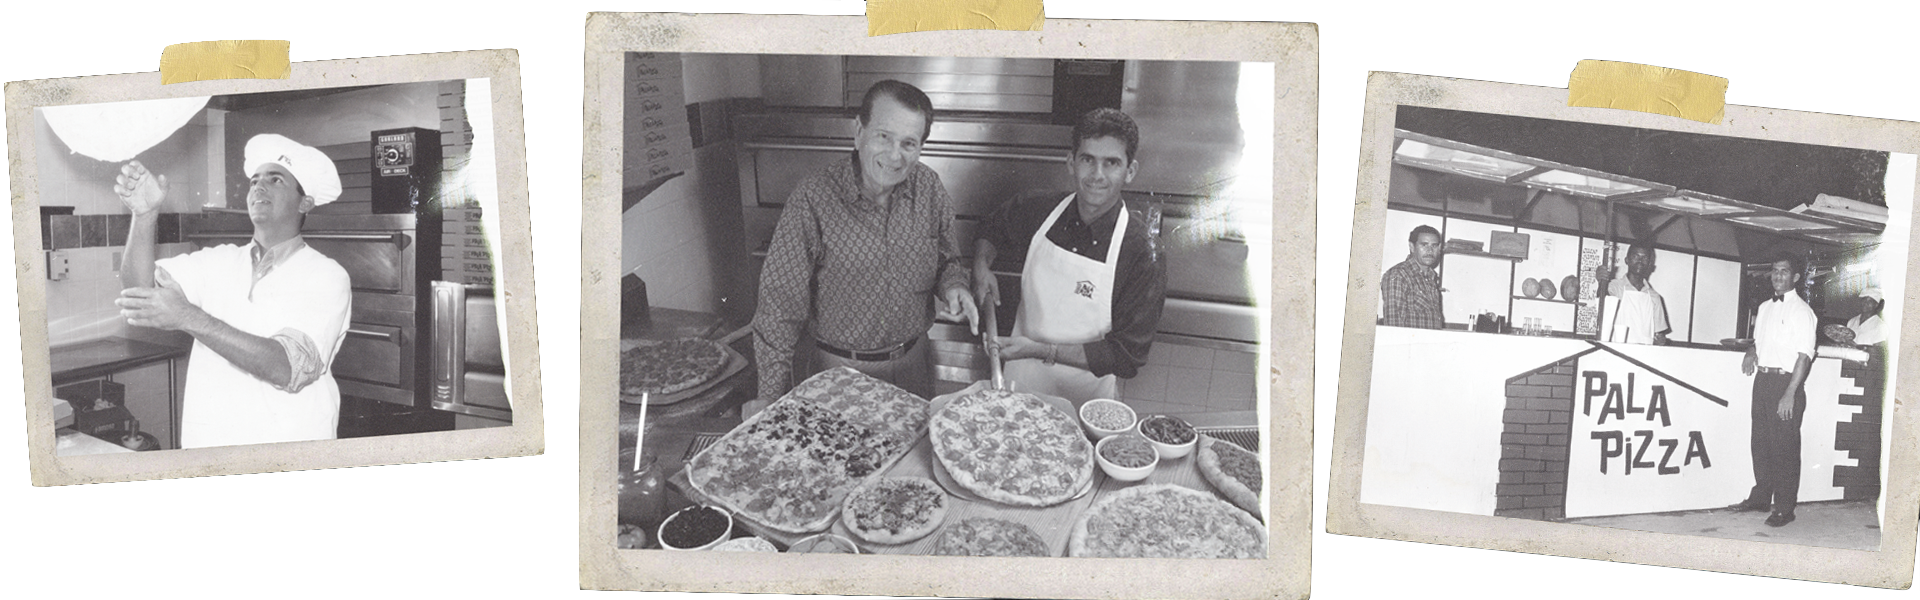 Pala Pizza - ¡INTRODUCIENDONuestra Pizzotta ahora con Masa Fina!‼️🍕 16  pedazos de puro sabor por $955. Comparte en grande con tu familia y  disfruta lo nuevo de #PalaPizza 🤩 Disponible en todas